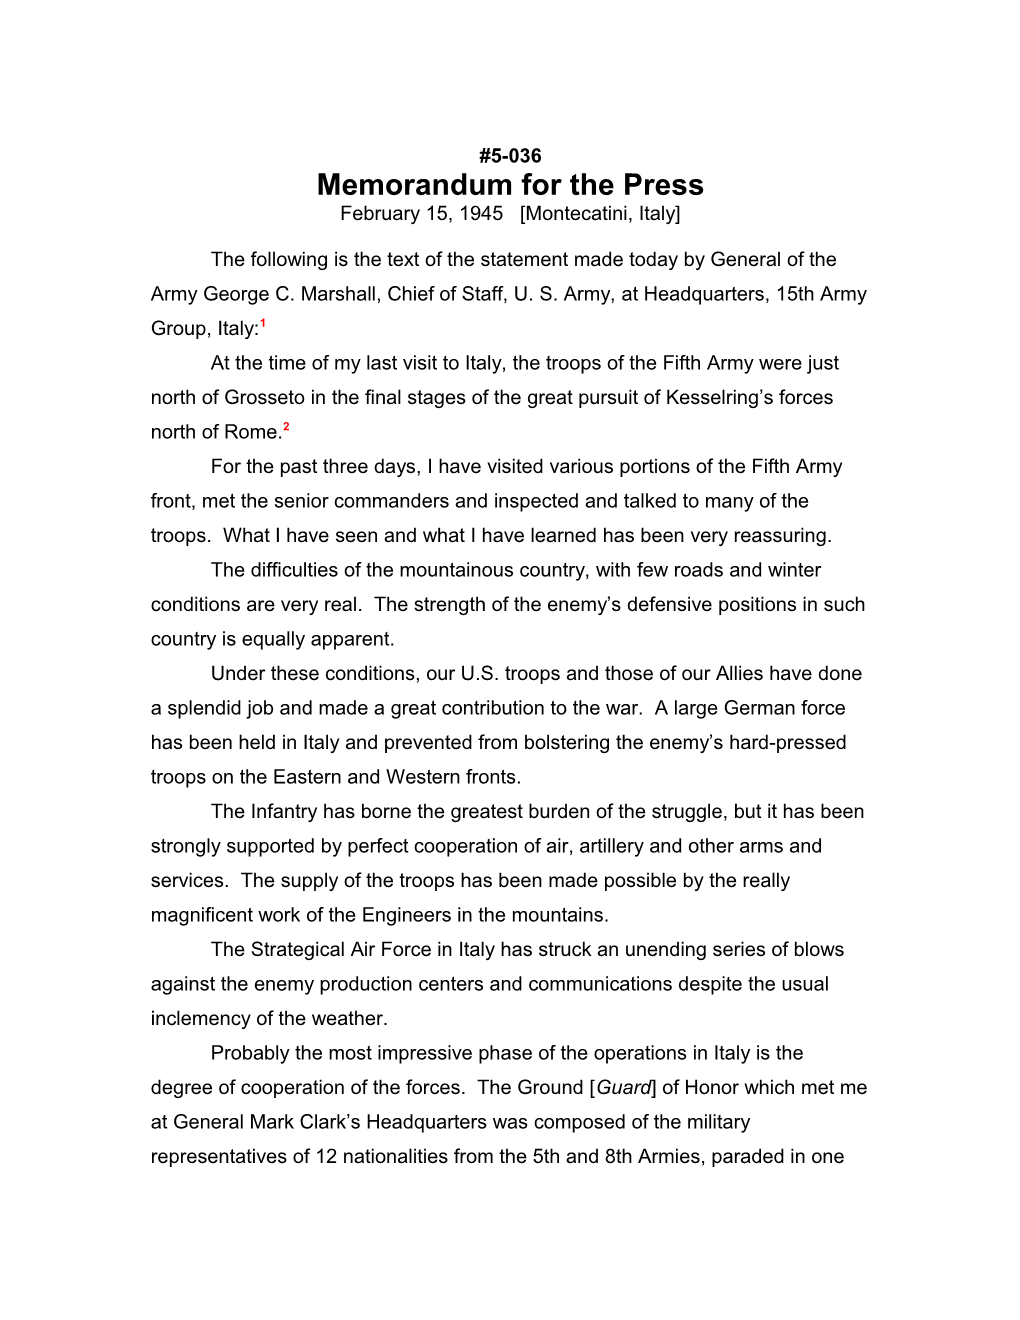 Memorandum for the Press